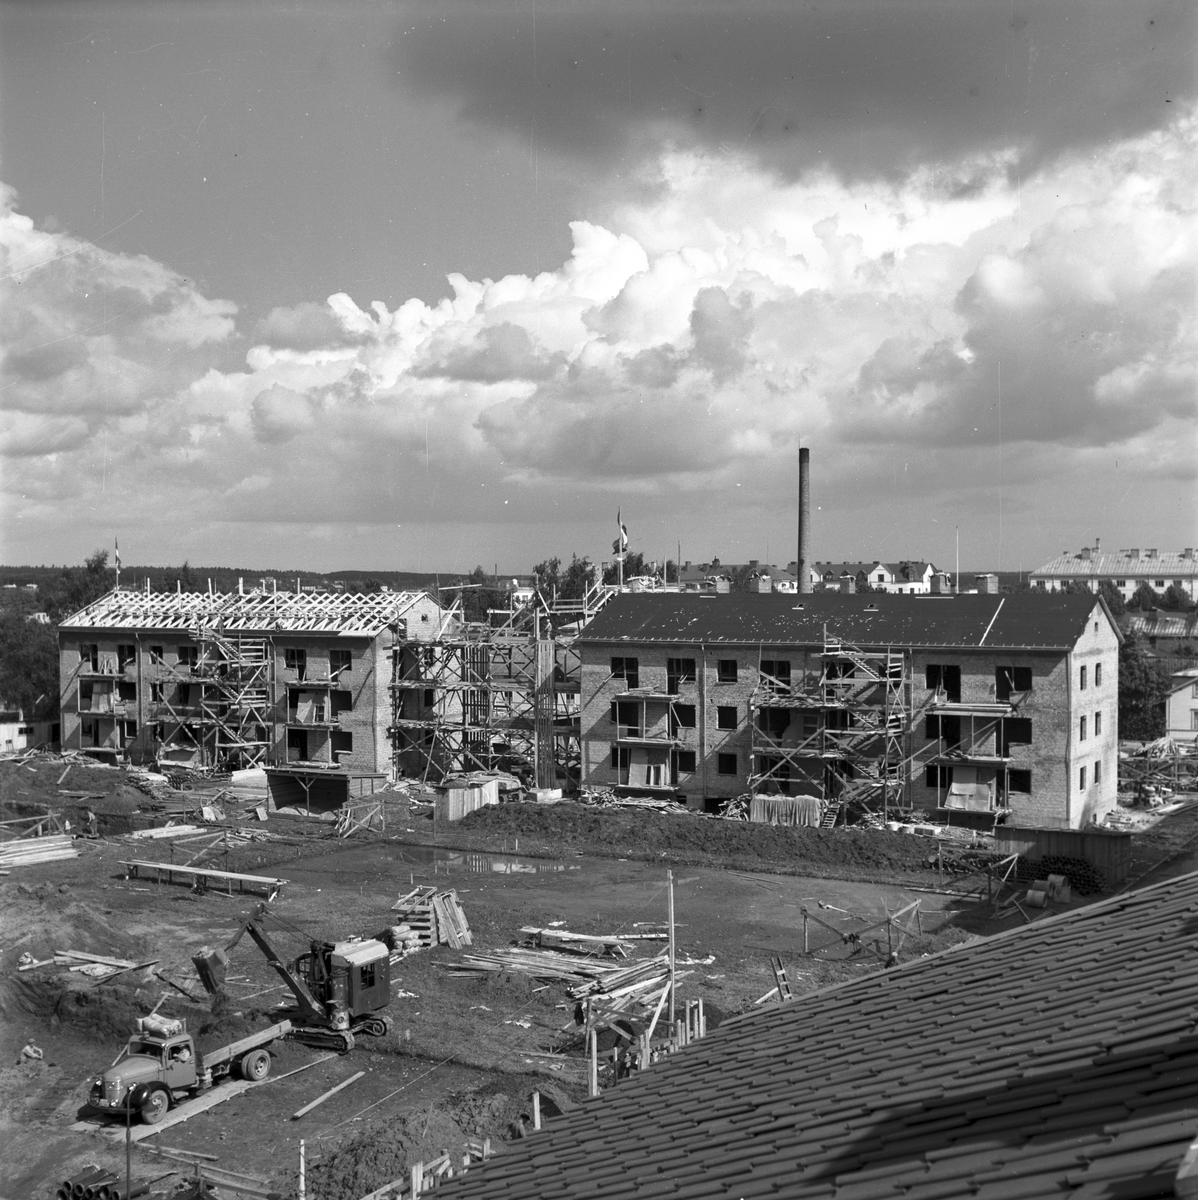 HSB Hyresgästernas Sparkasse- & Byggnadsförening. Nybygge i kvarteret Skyttegården. September 1945.